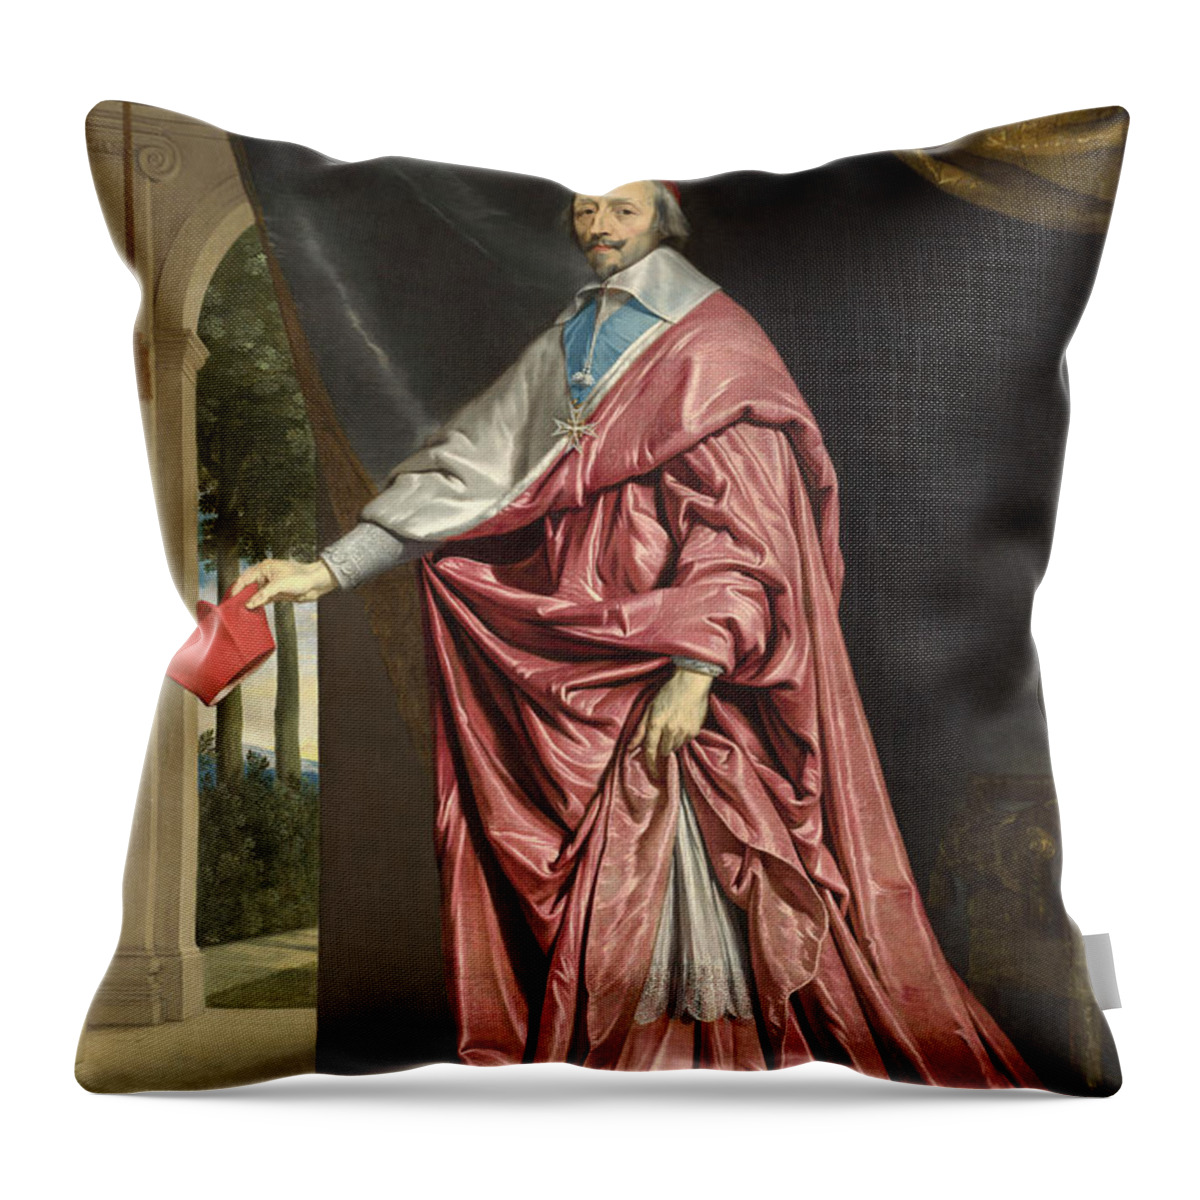 Philippe De Champaigne Throw Pillow featuring the painting Cardinal de Richelieu by Philippe de Champaigne